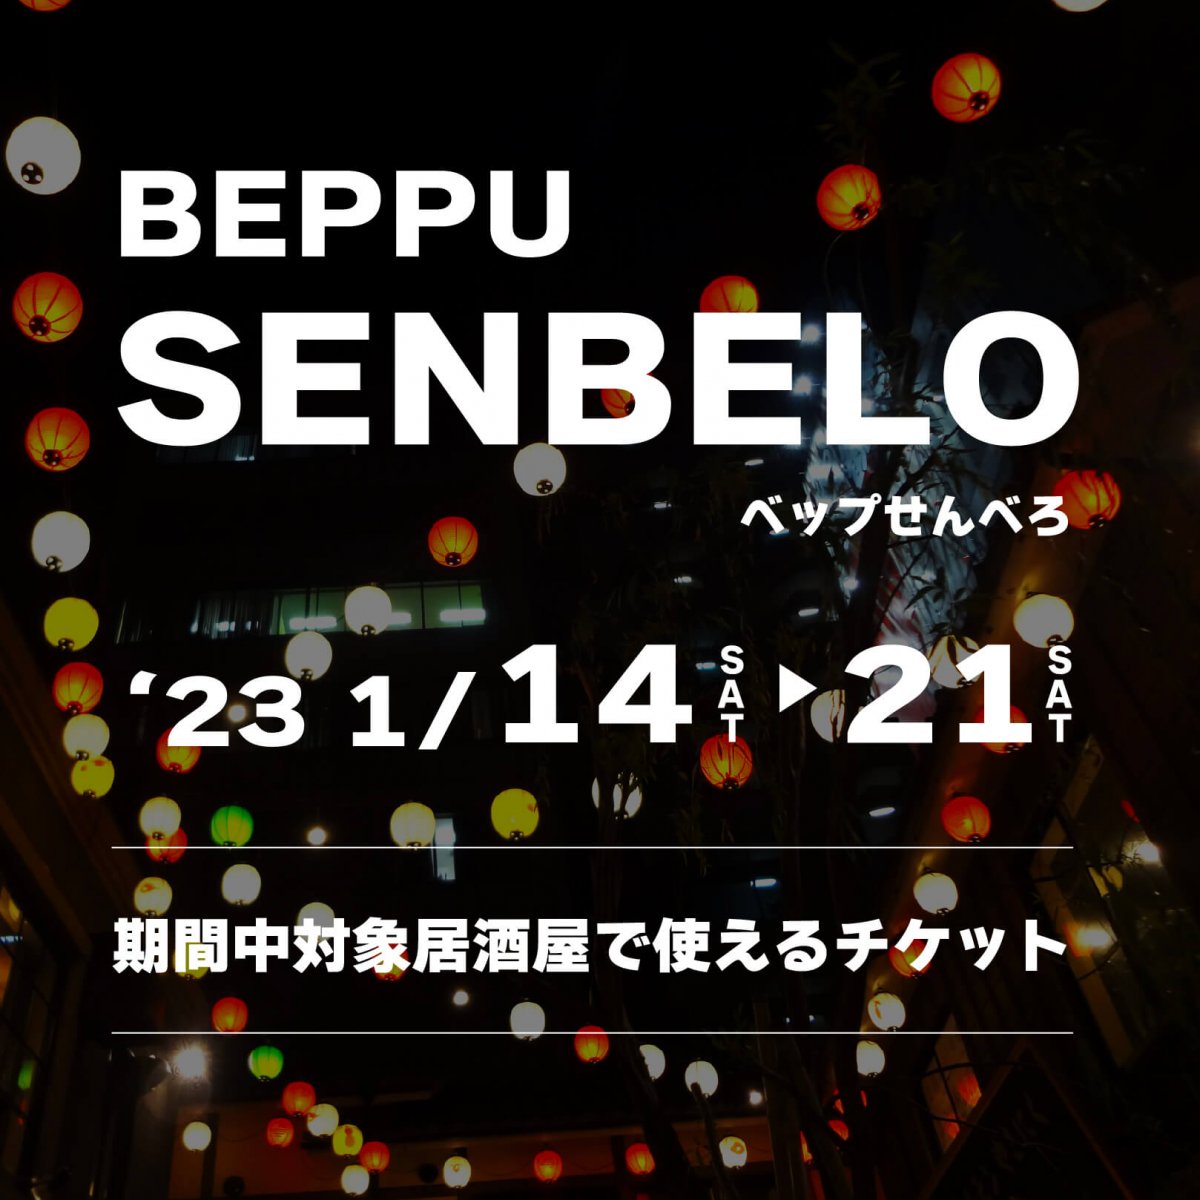 【3枚つづり】BEPPU SENBEKO チケット代金